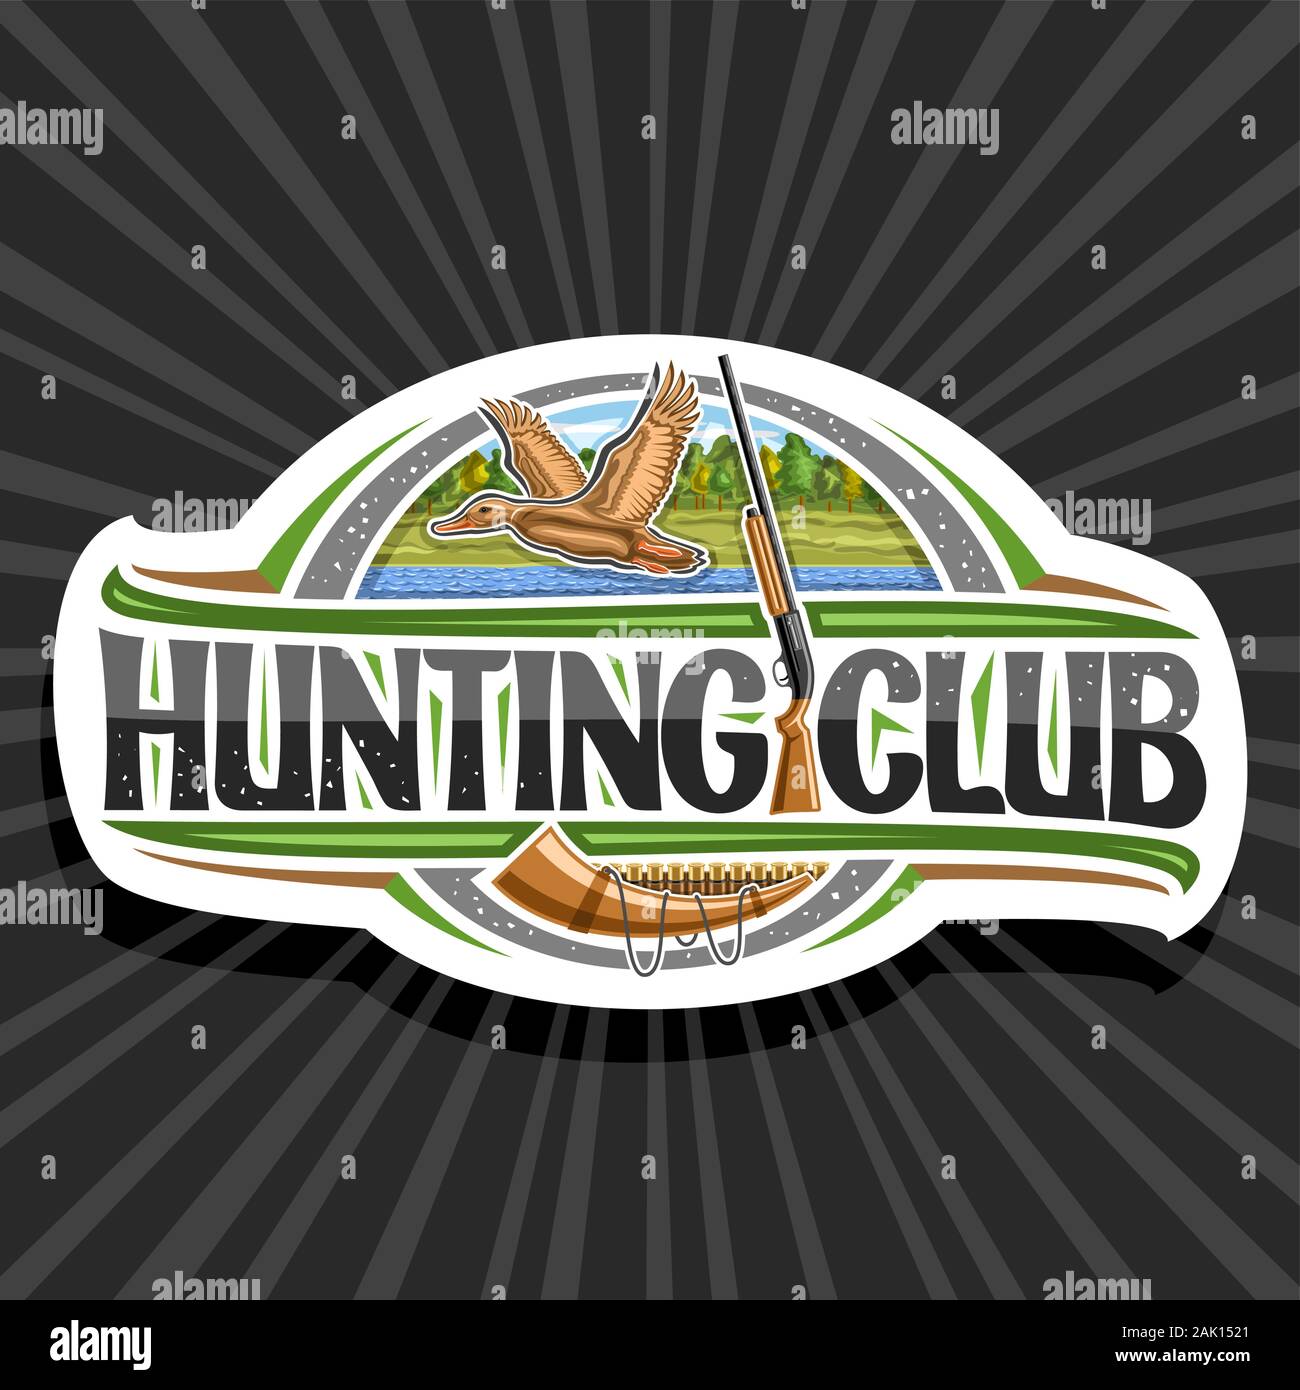 Logo Vector pour la chasse Club, decorative sign board avec illustration de voler canard femelle sur fond d'arbres et de vieux fusil, symbole moderne pour le canard Illustration de Vecteur